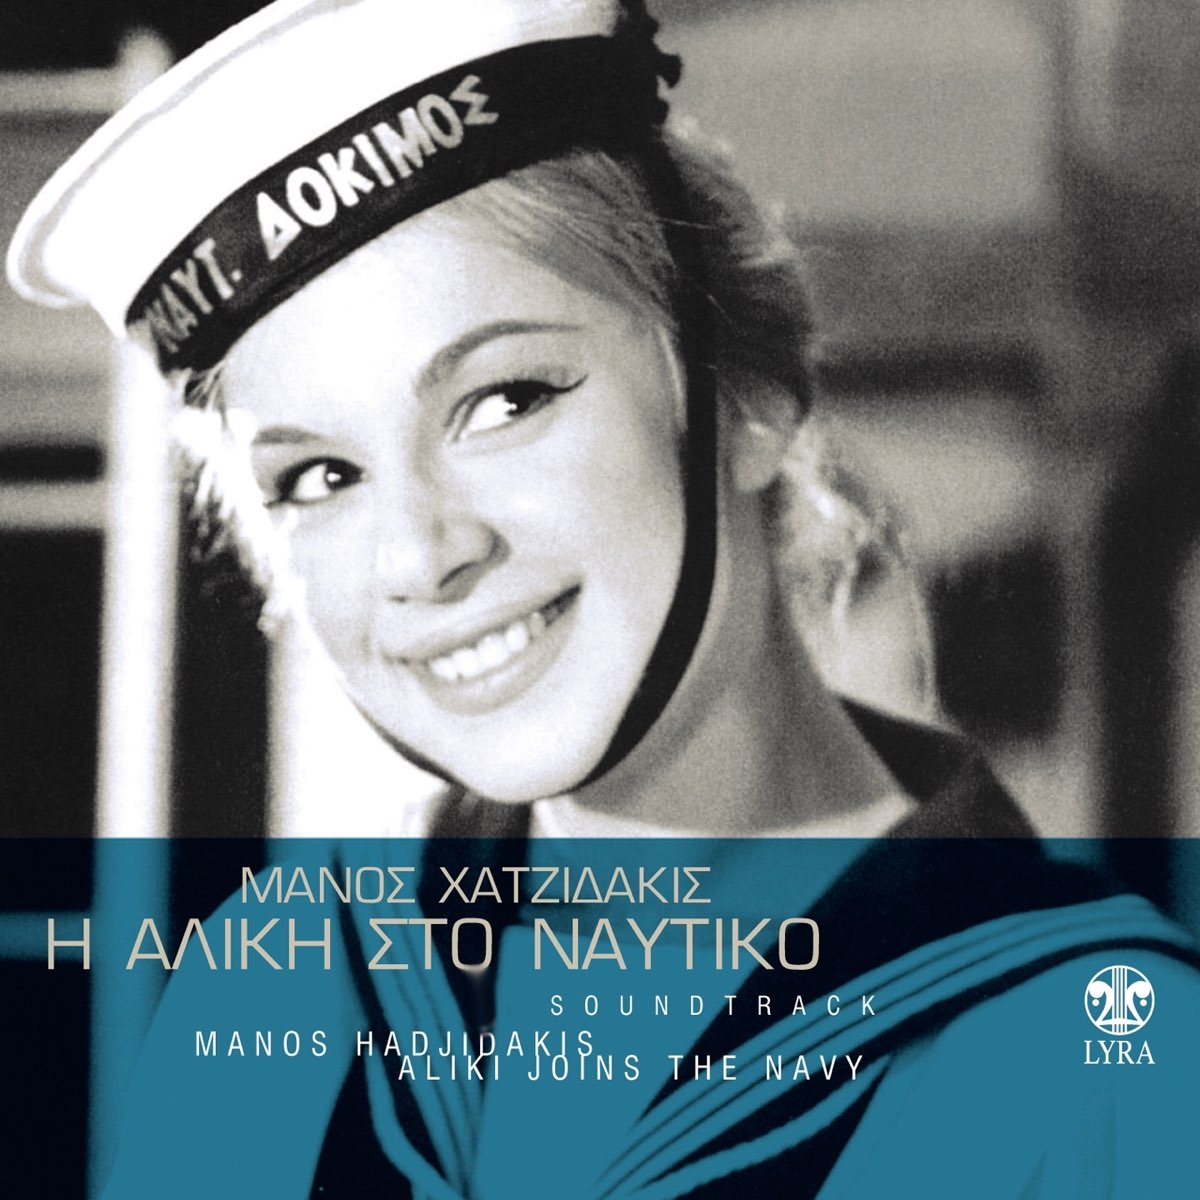 I Aliki Sto Naftiko (Original Motion Picture Soundtrack) - Album by Manos  Hadjidakis, Aliki Vougiouklaki & Aderfoi Katsampa - Apple Music